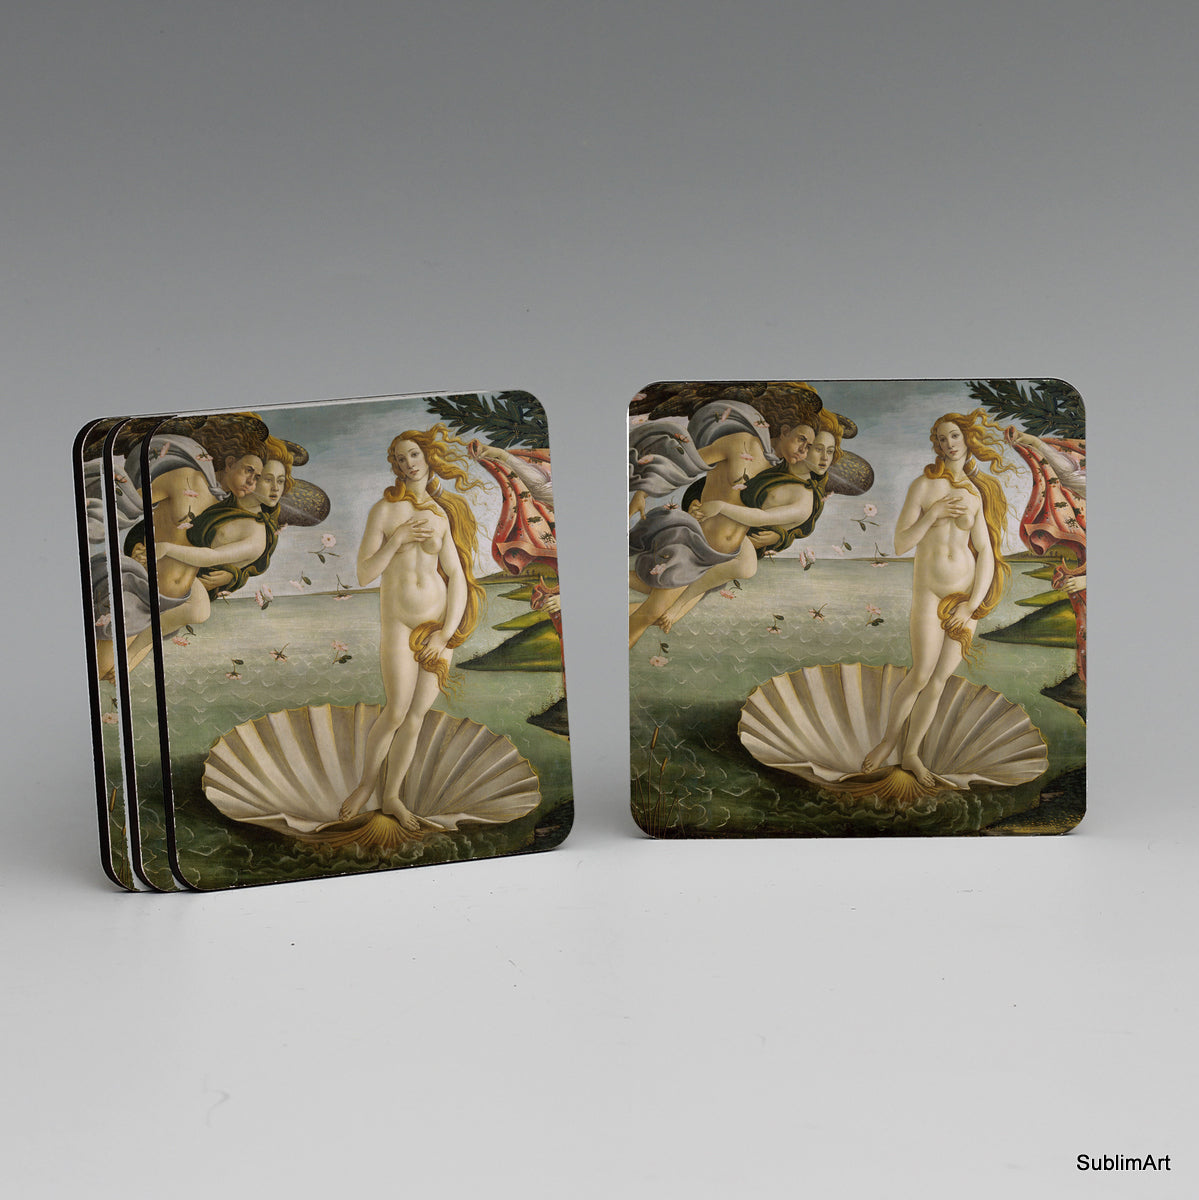 SUBLIMART: MDF Hardboard Set of 4 Coasters - Design: Affresco - The Birth of Venus by Botticelli